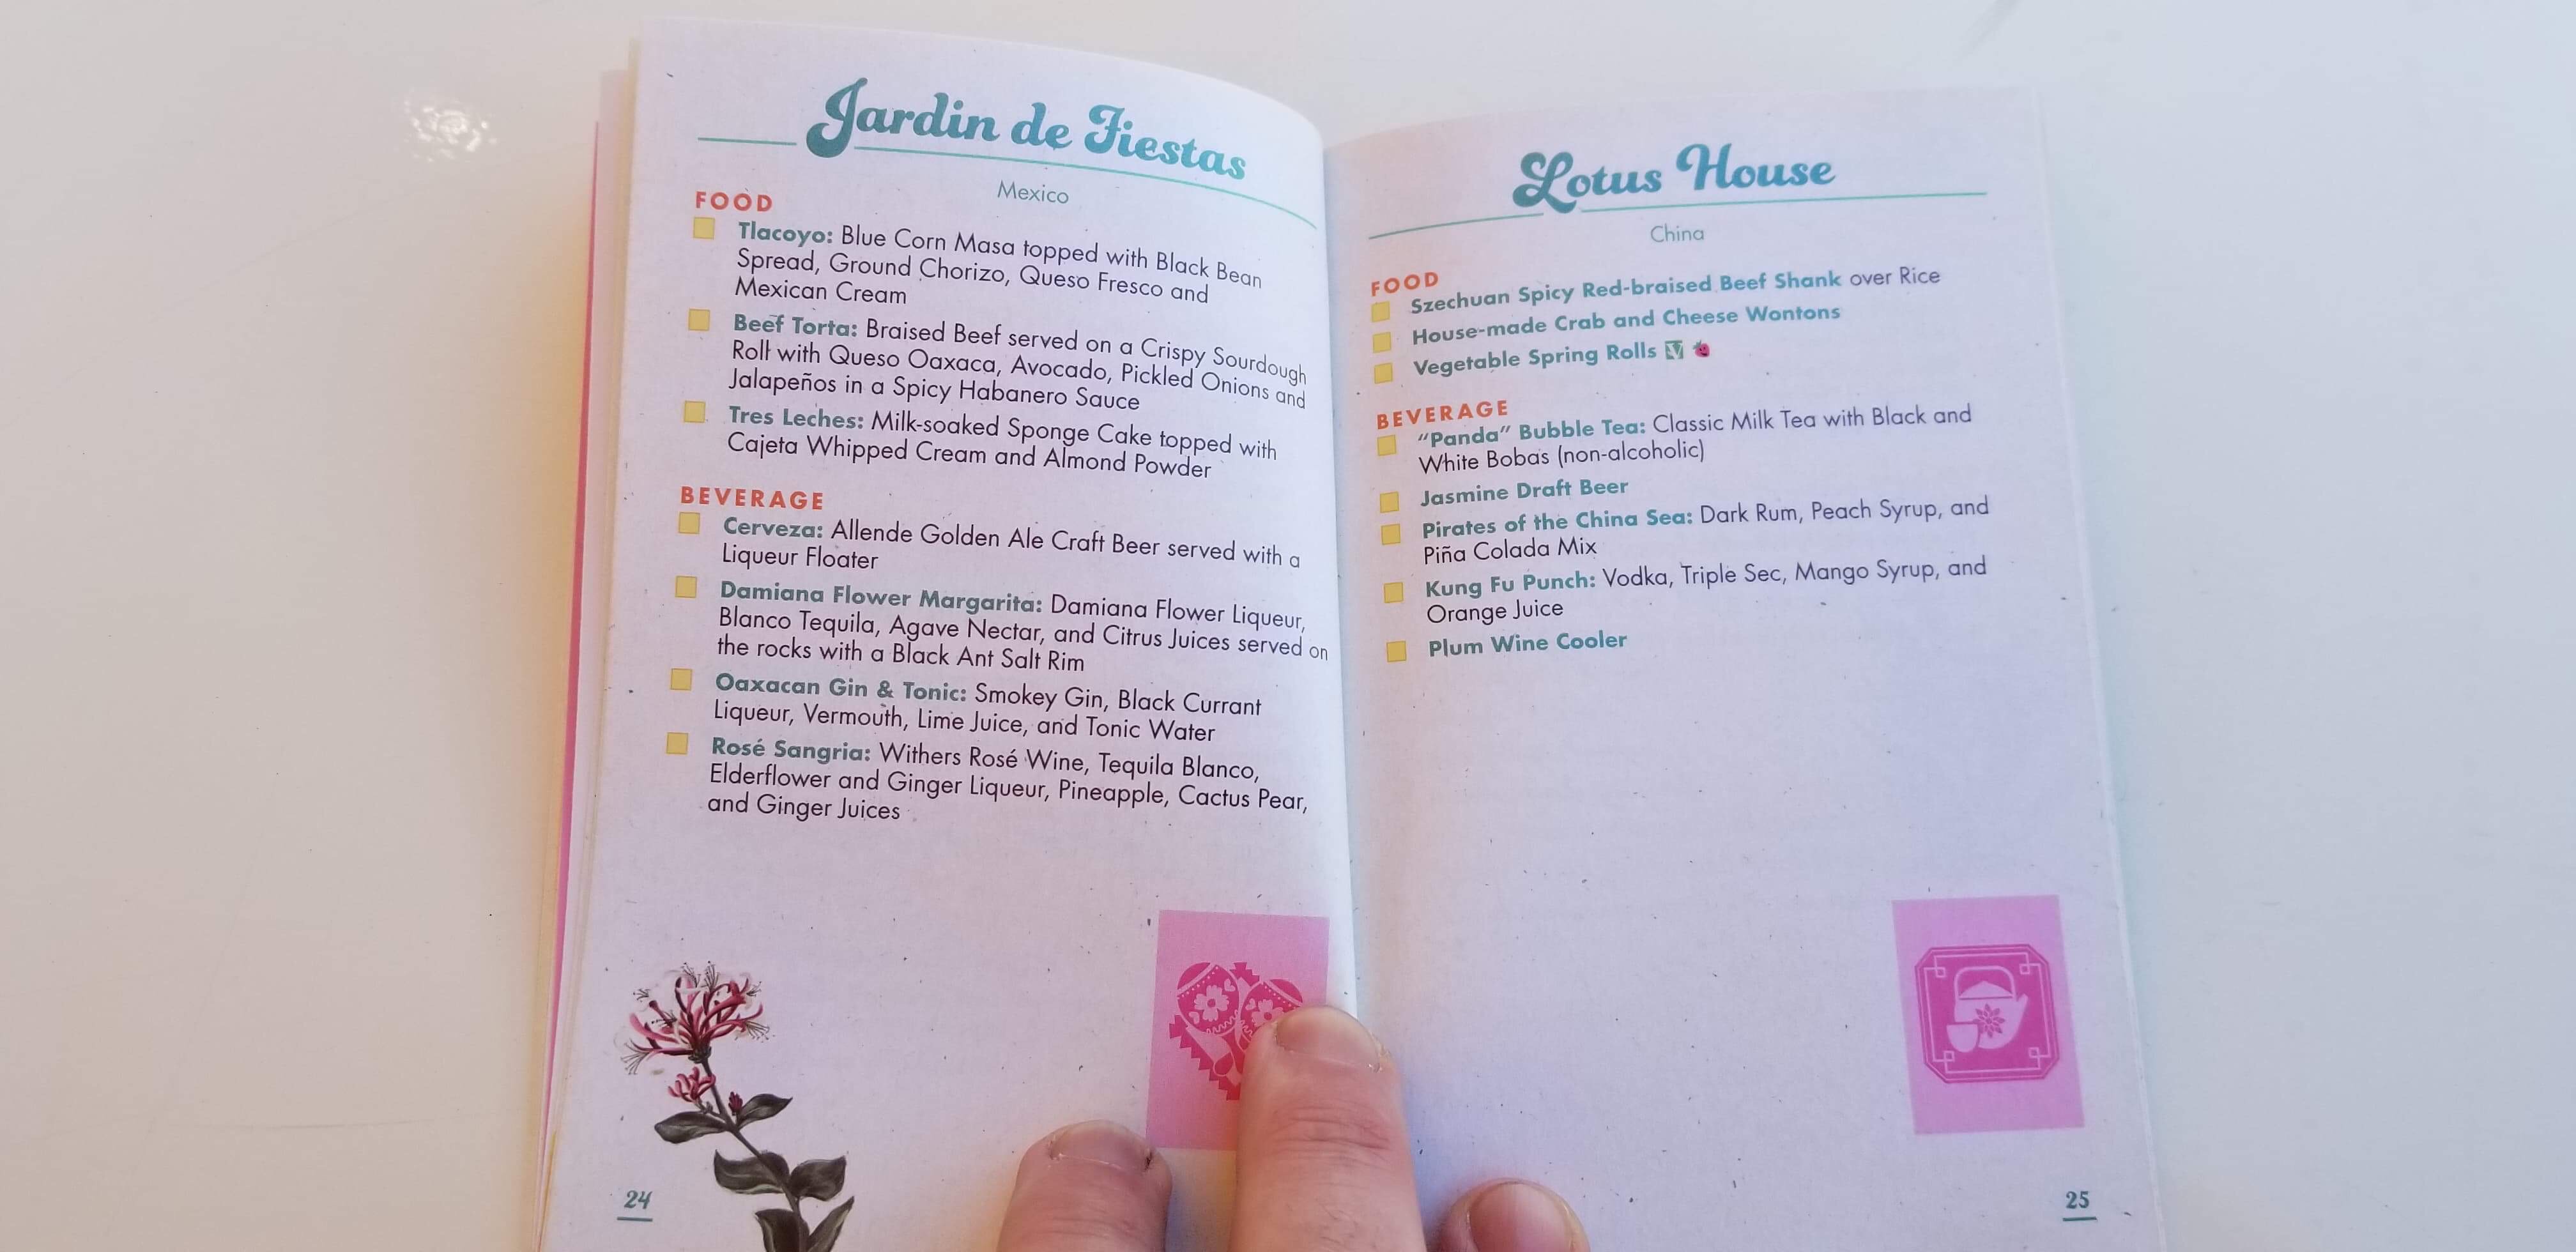 Epcot Flower and Garden Festival Passport Book 2019